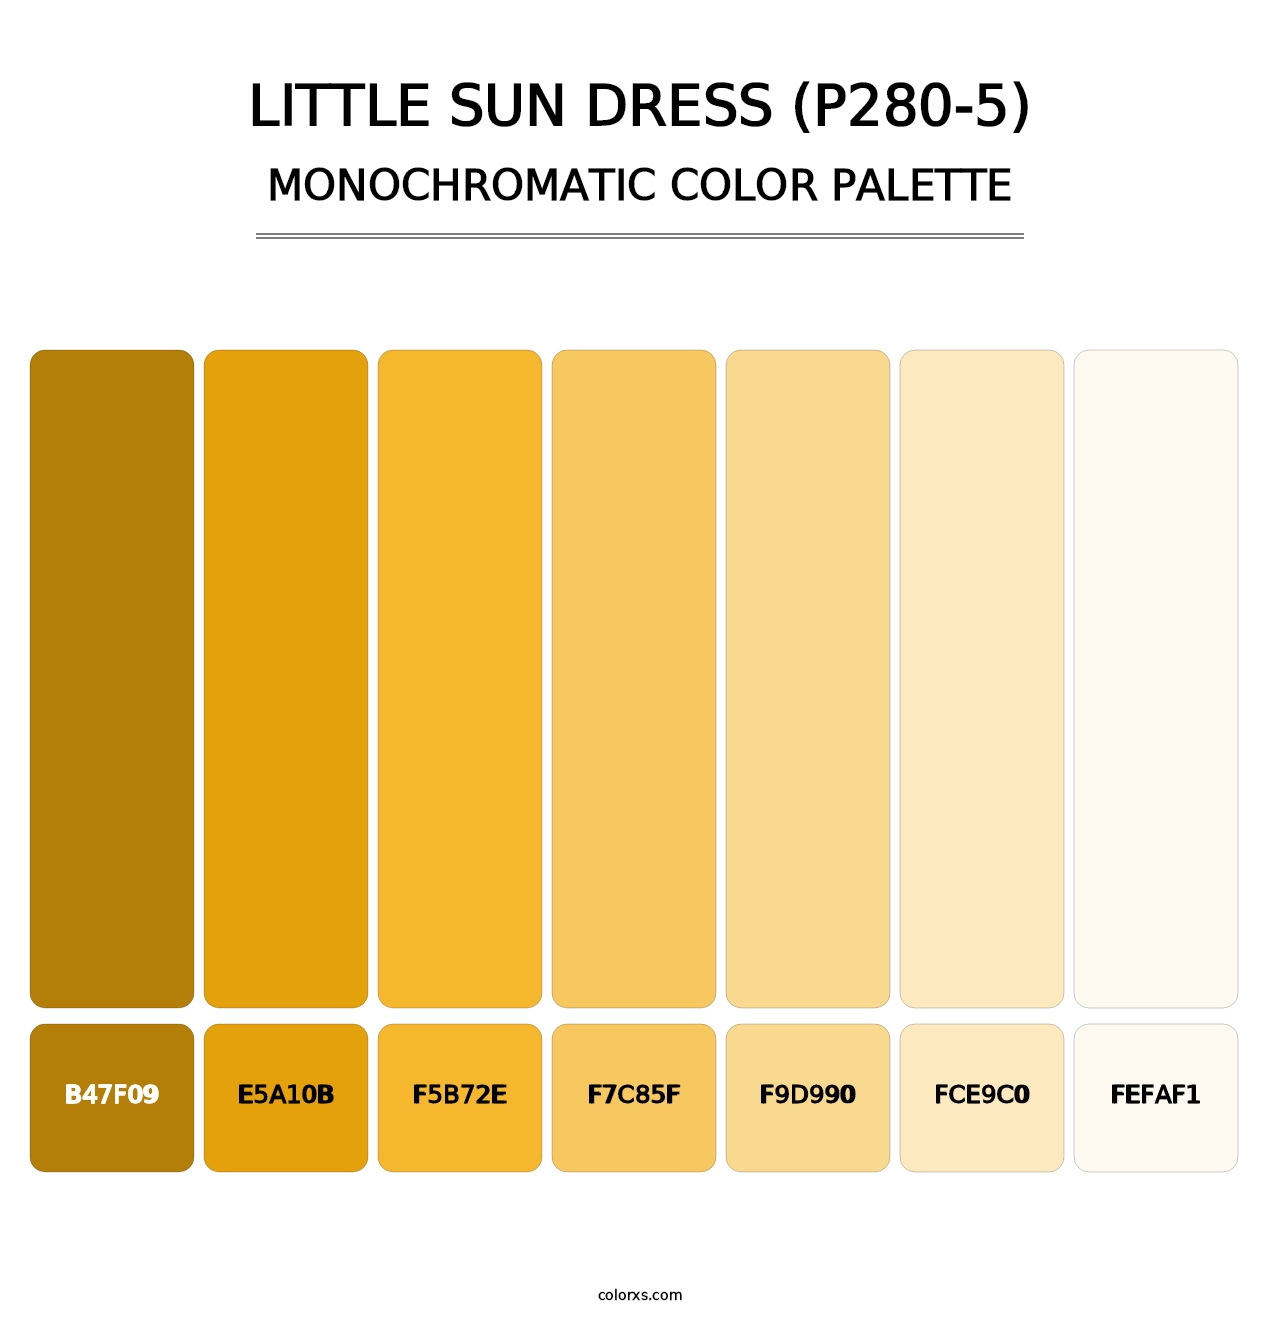 Little Sun Dress (P280-5) - Monochromatic Color Palette